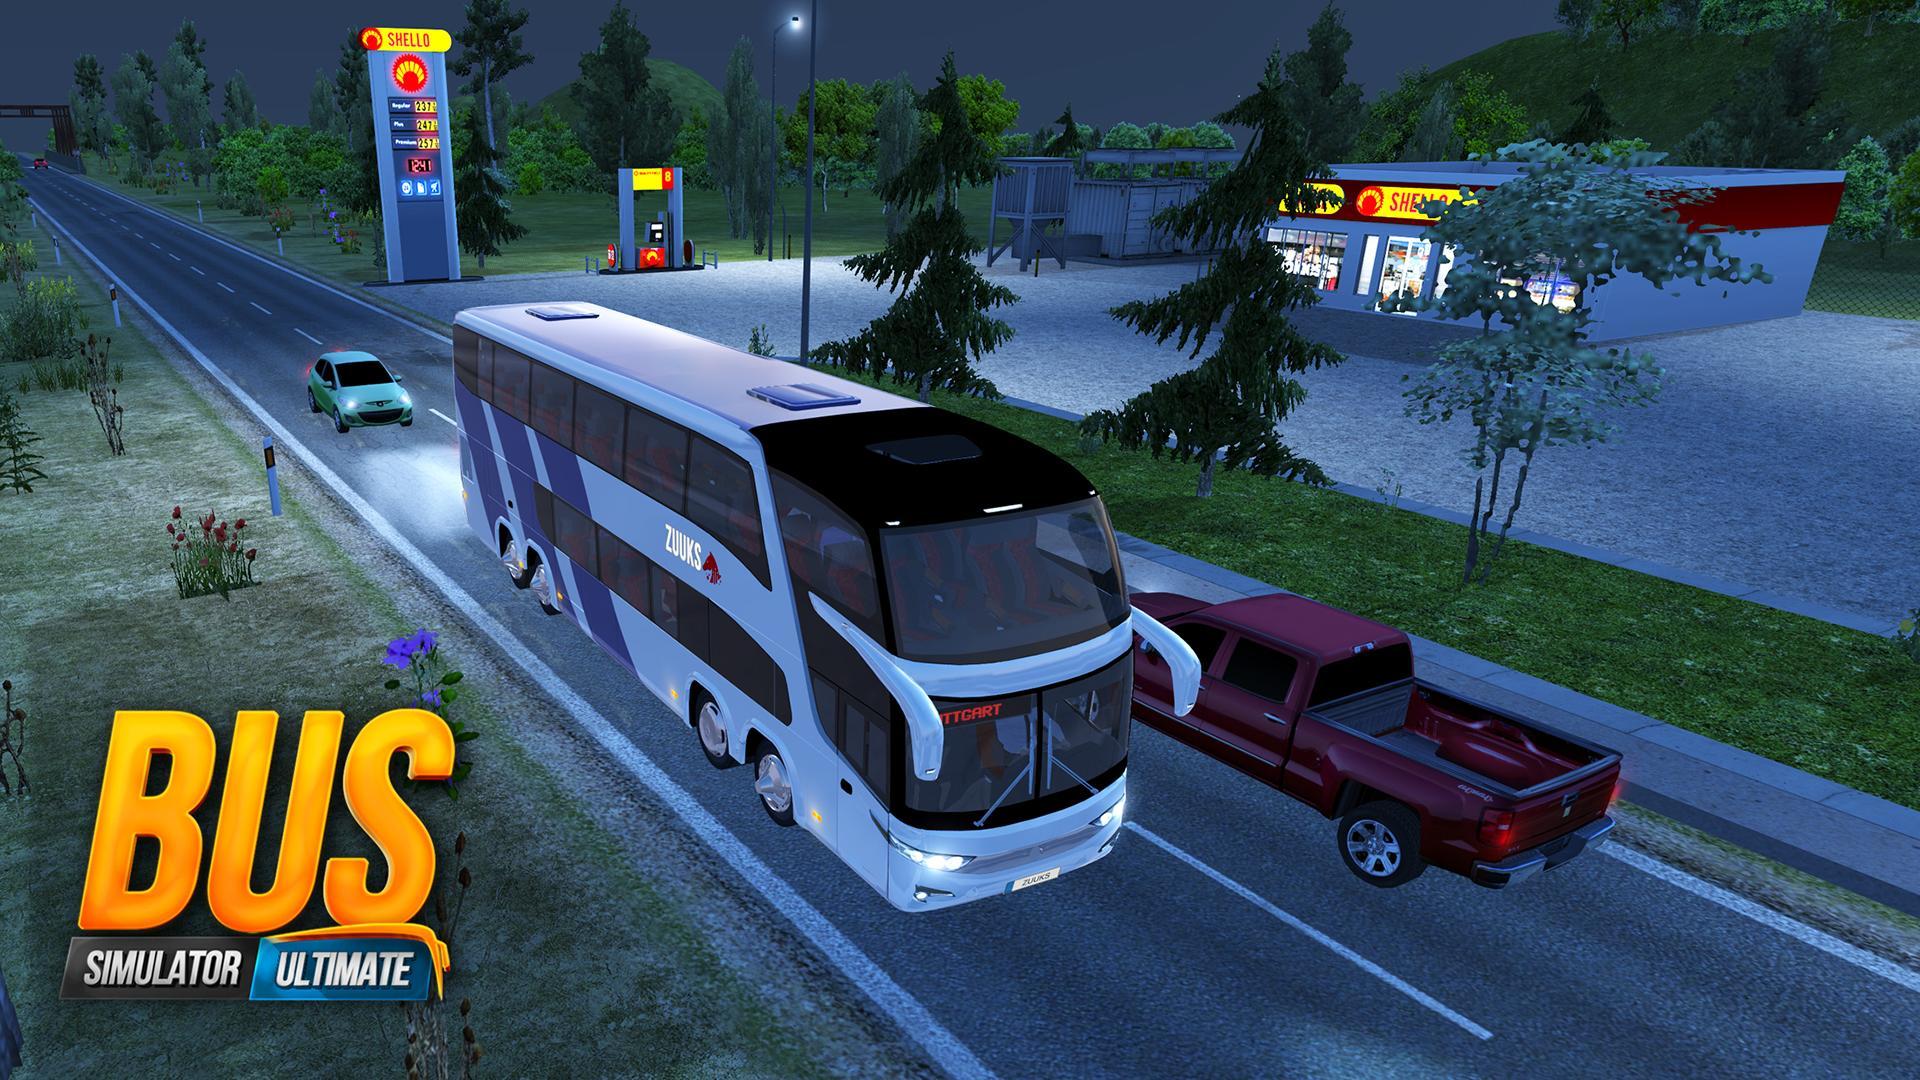 game bus simulator pc full version